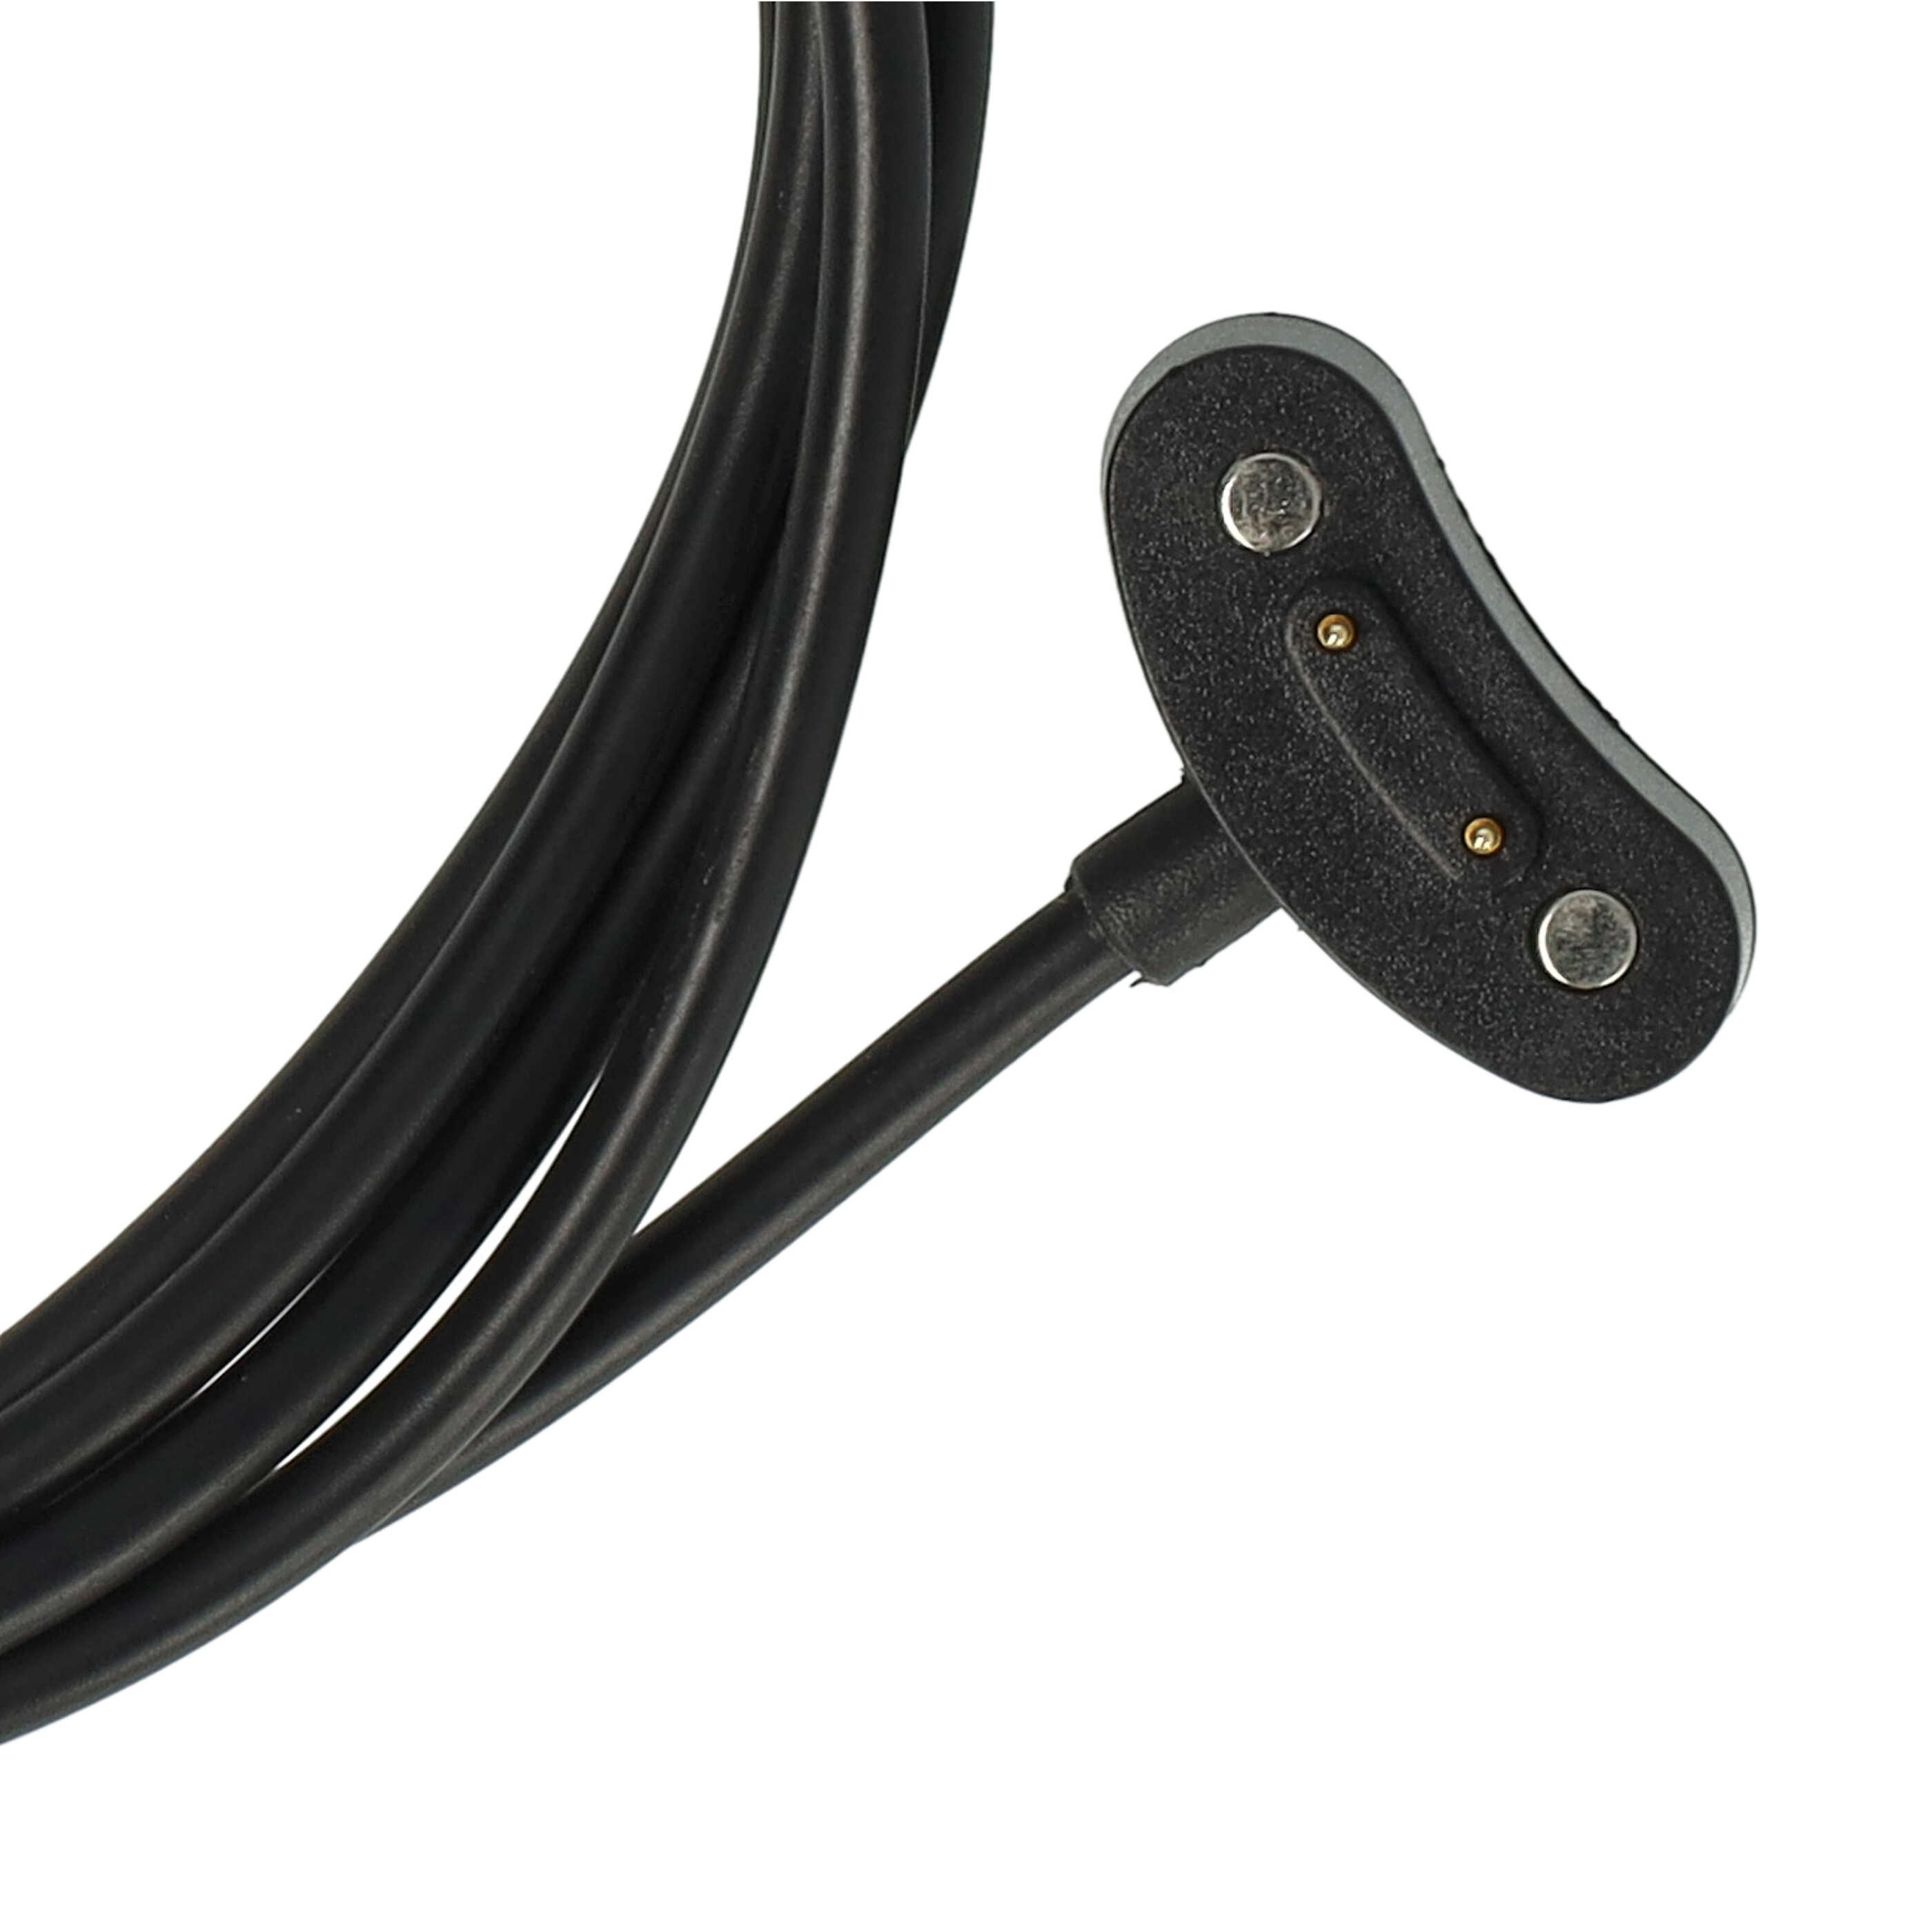 Câble de charge pour bracelet d'activité Mobvoi TicWatch et autres – câble de 100 cm